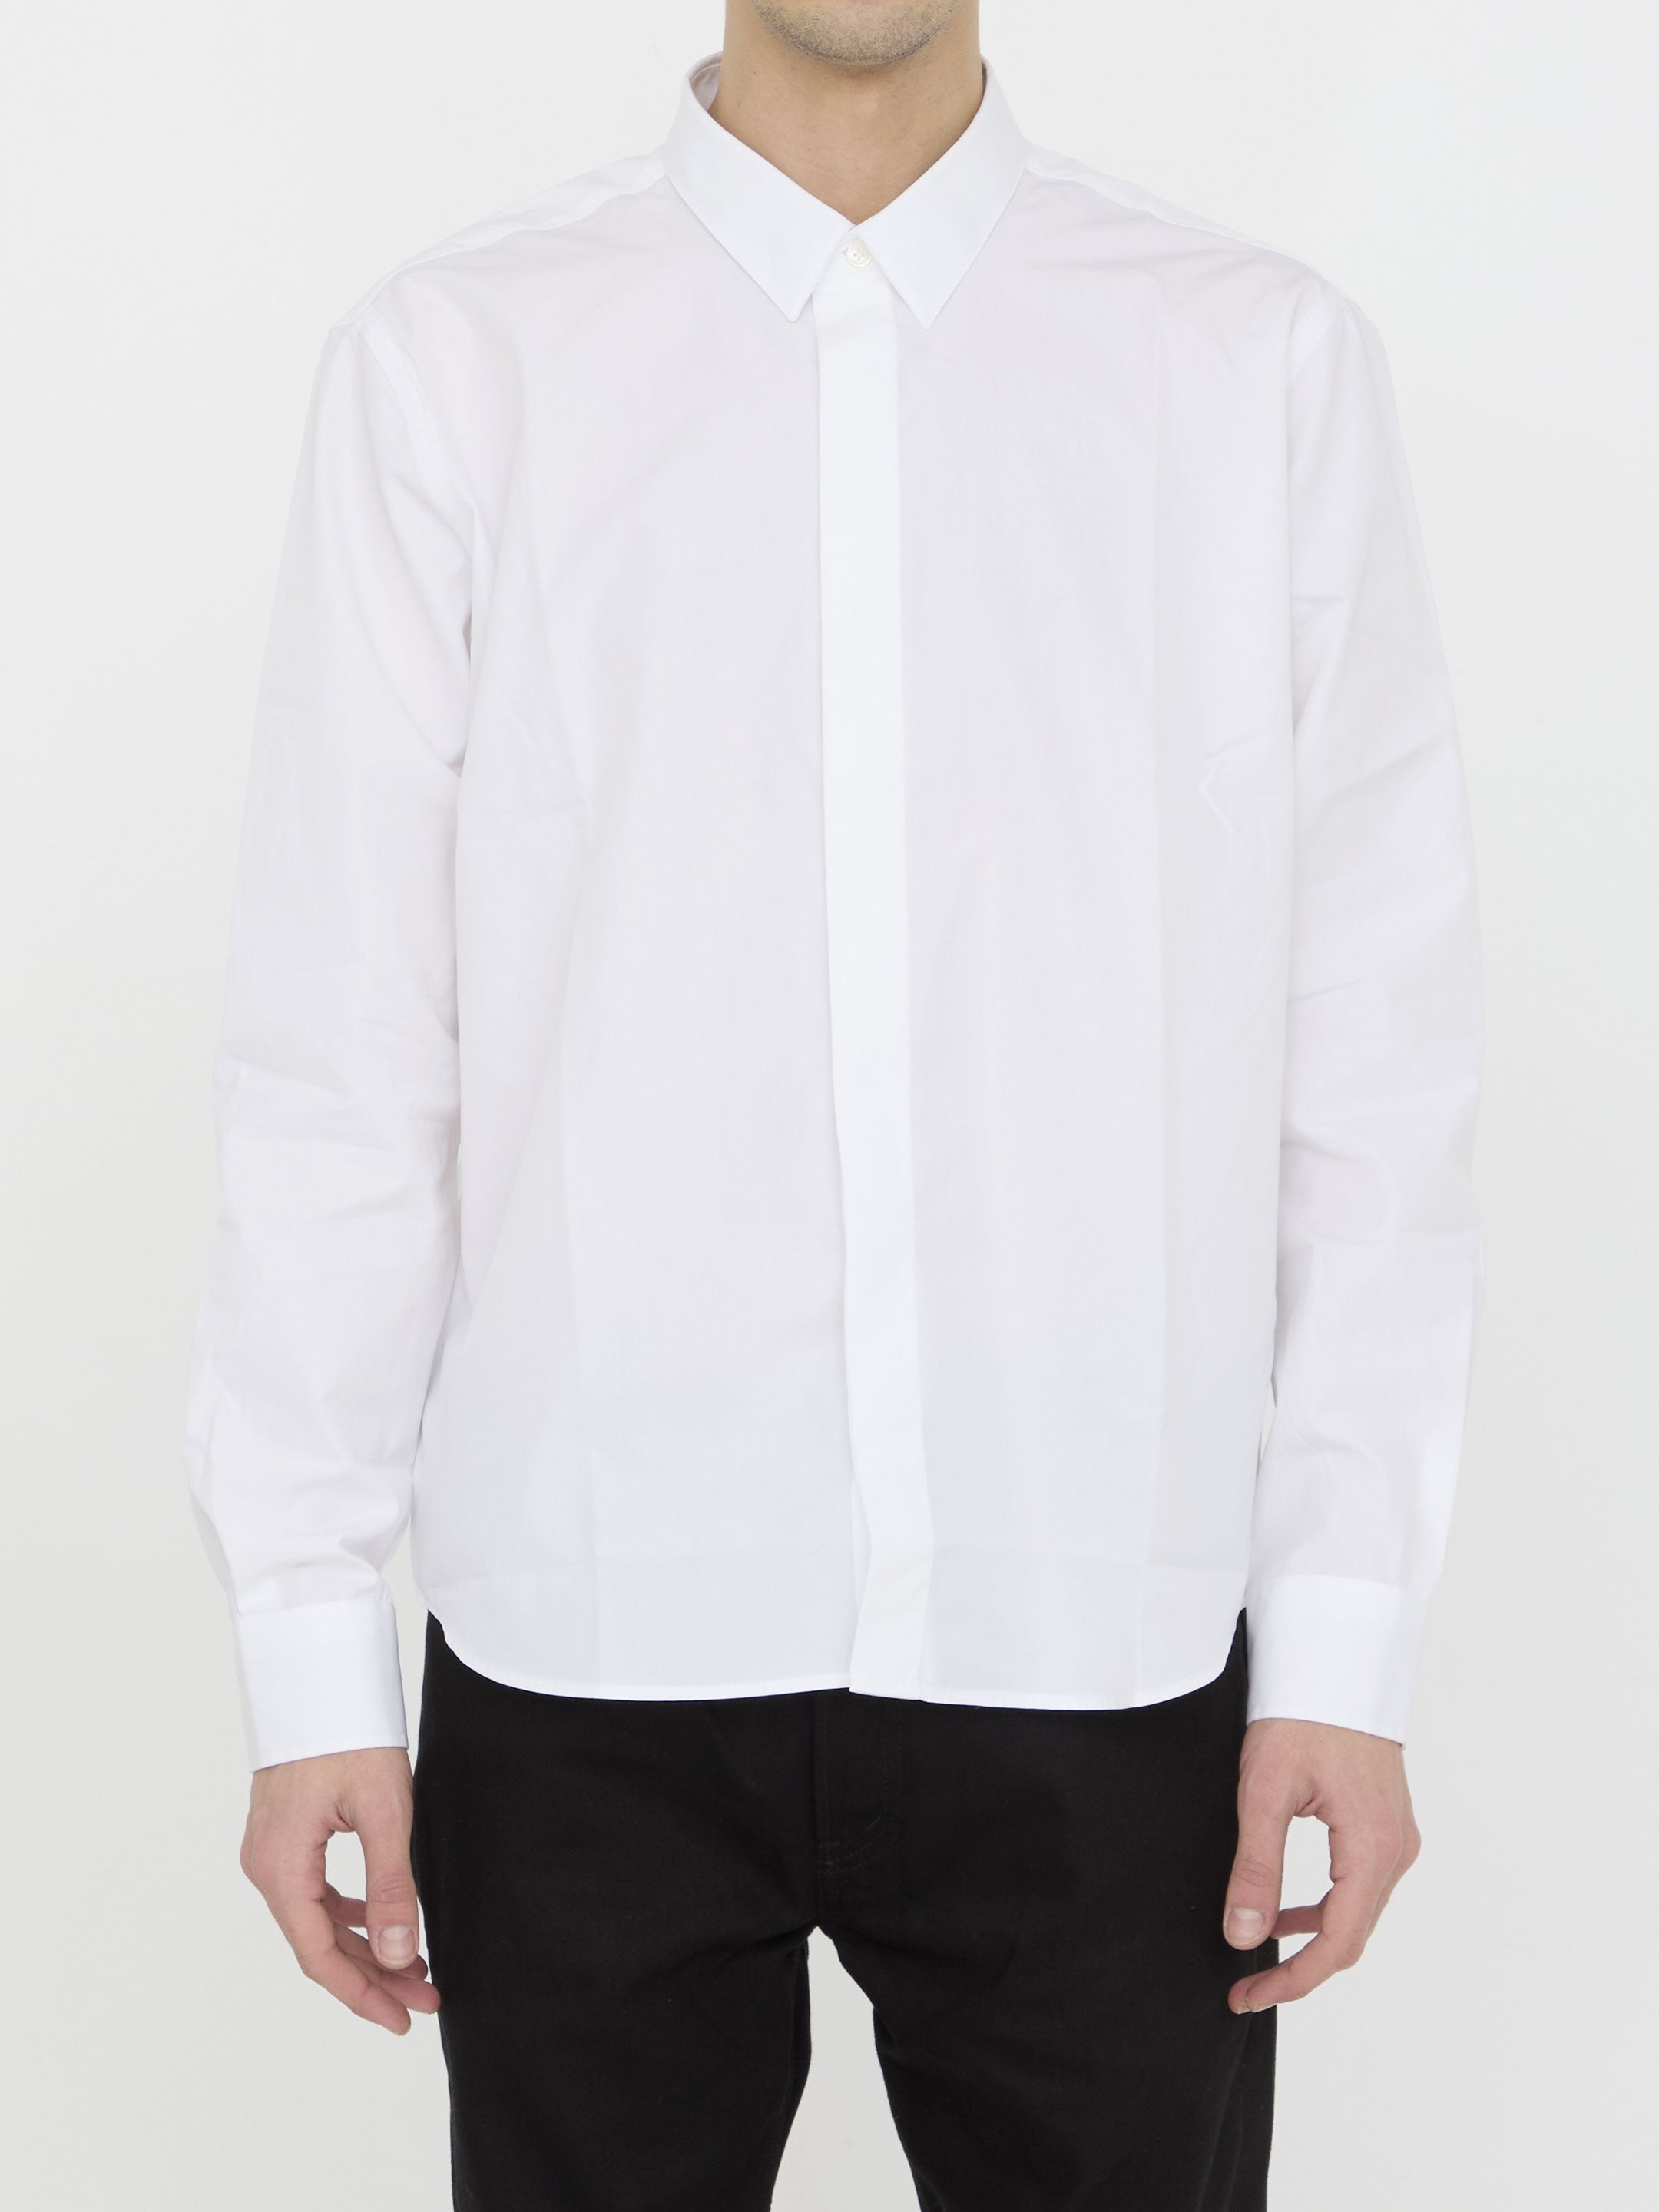 AMI-PARIS-OUTLET-SALE-Cotton-shirt-Shirts-L-WHITE-ARCHIVE-COLLECTION.jpg